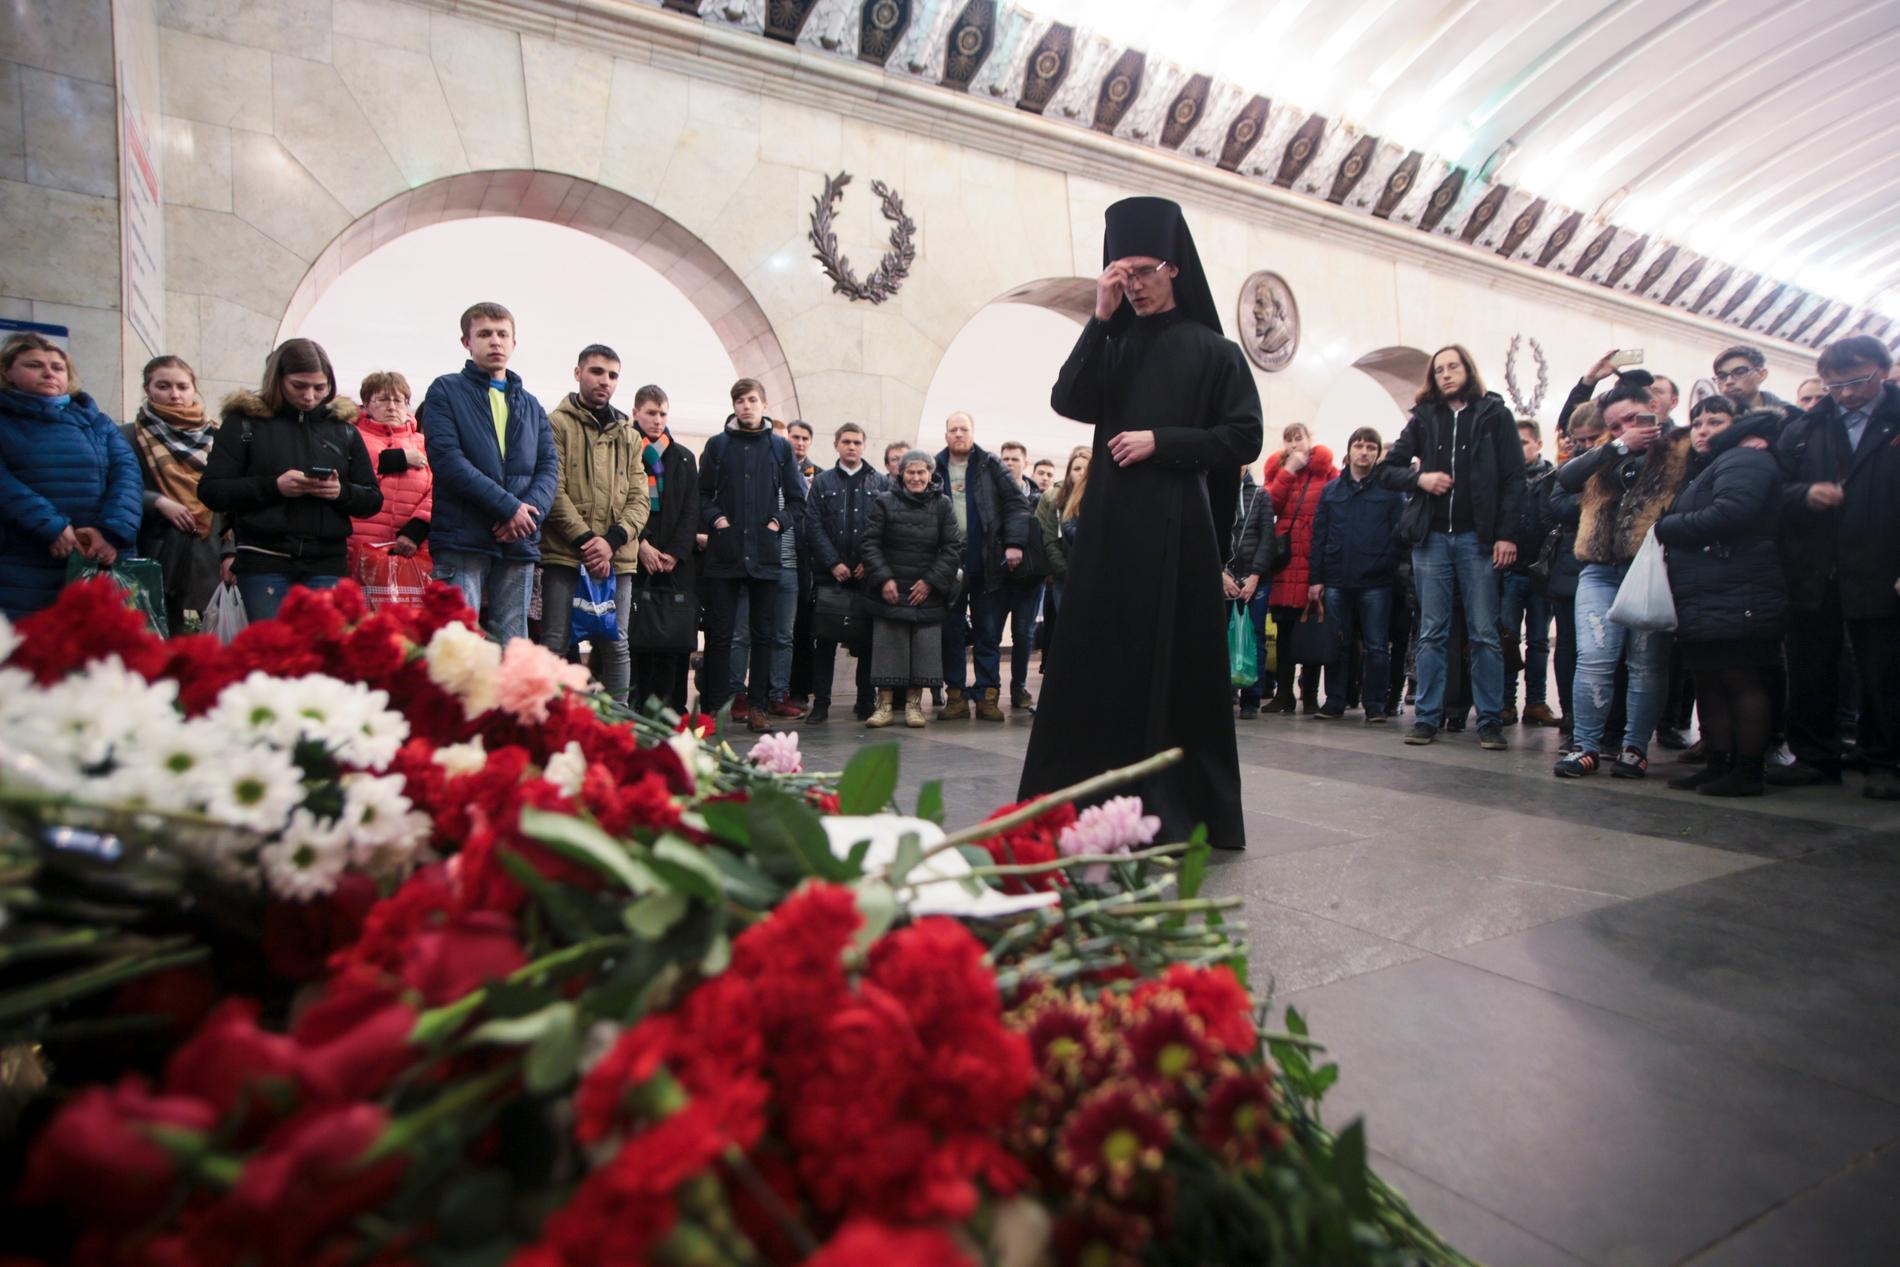 En ortodox präst under en minnesceremoni i april 2017 för bombdådets offer vid tunnelbanestationen Teknologiska institutet i S:t Petersburg. Arkivbild.